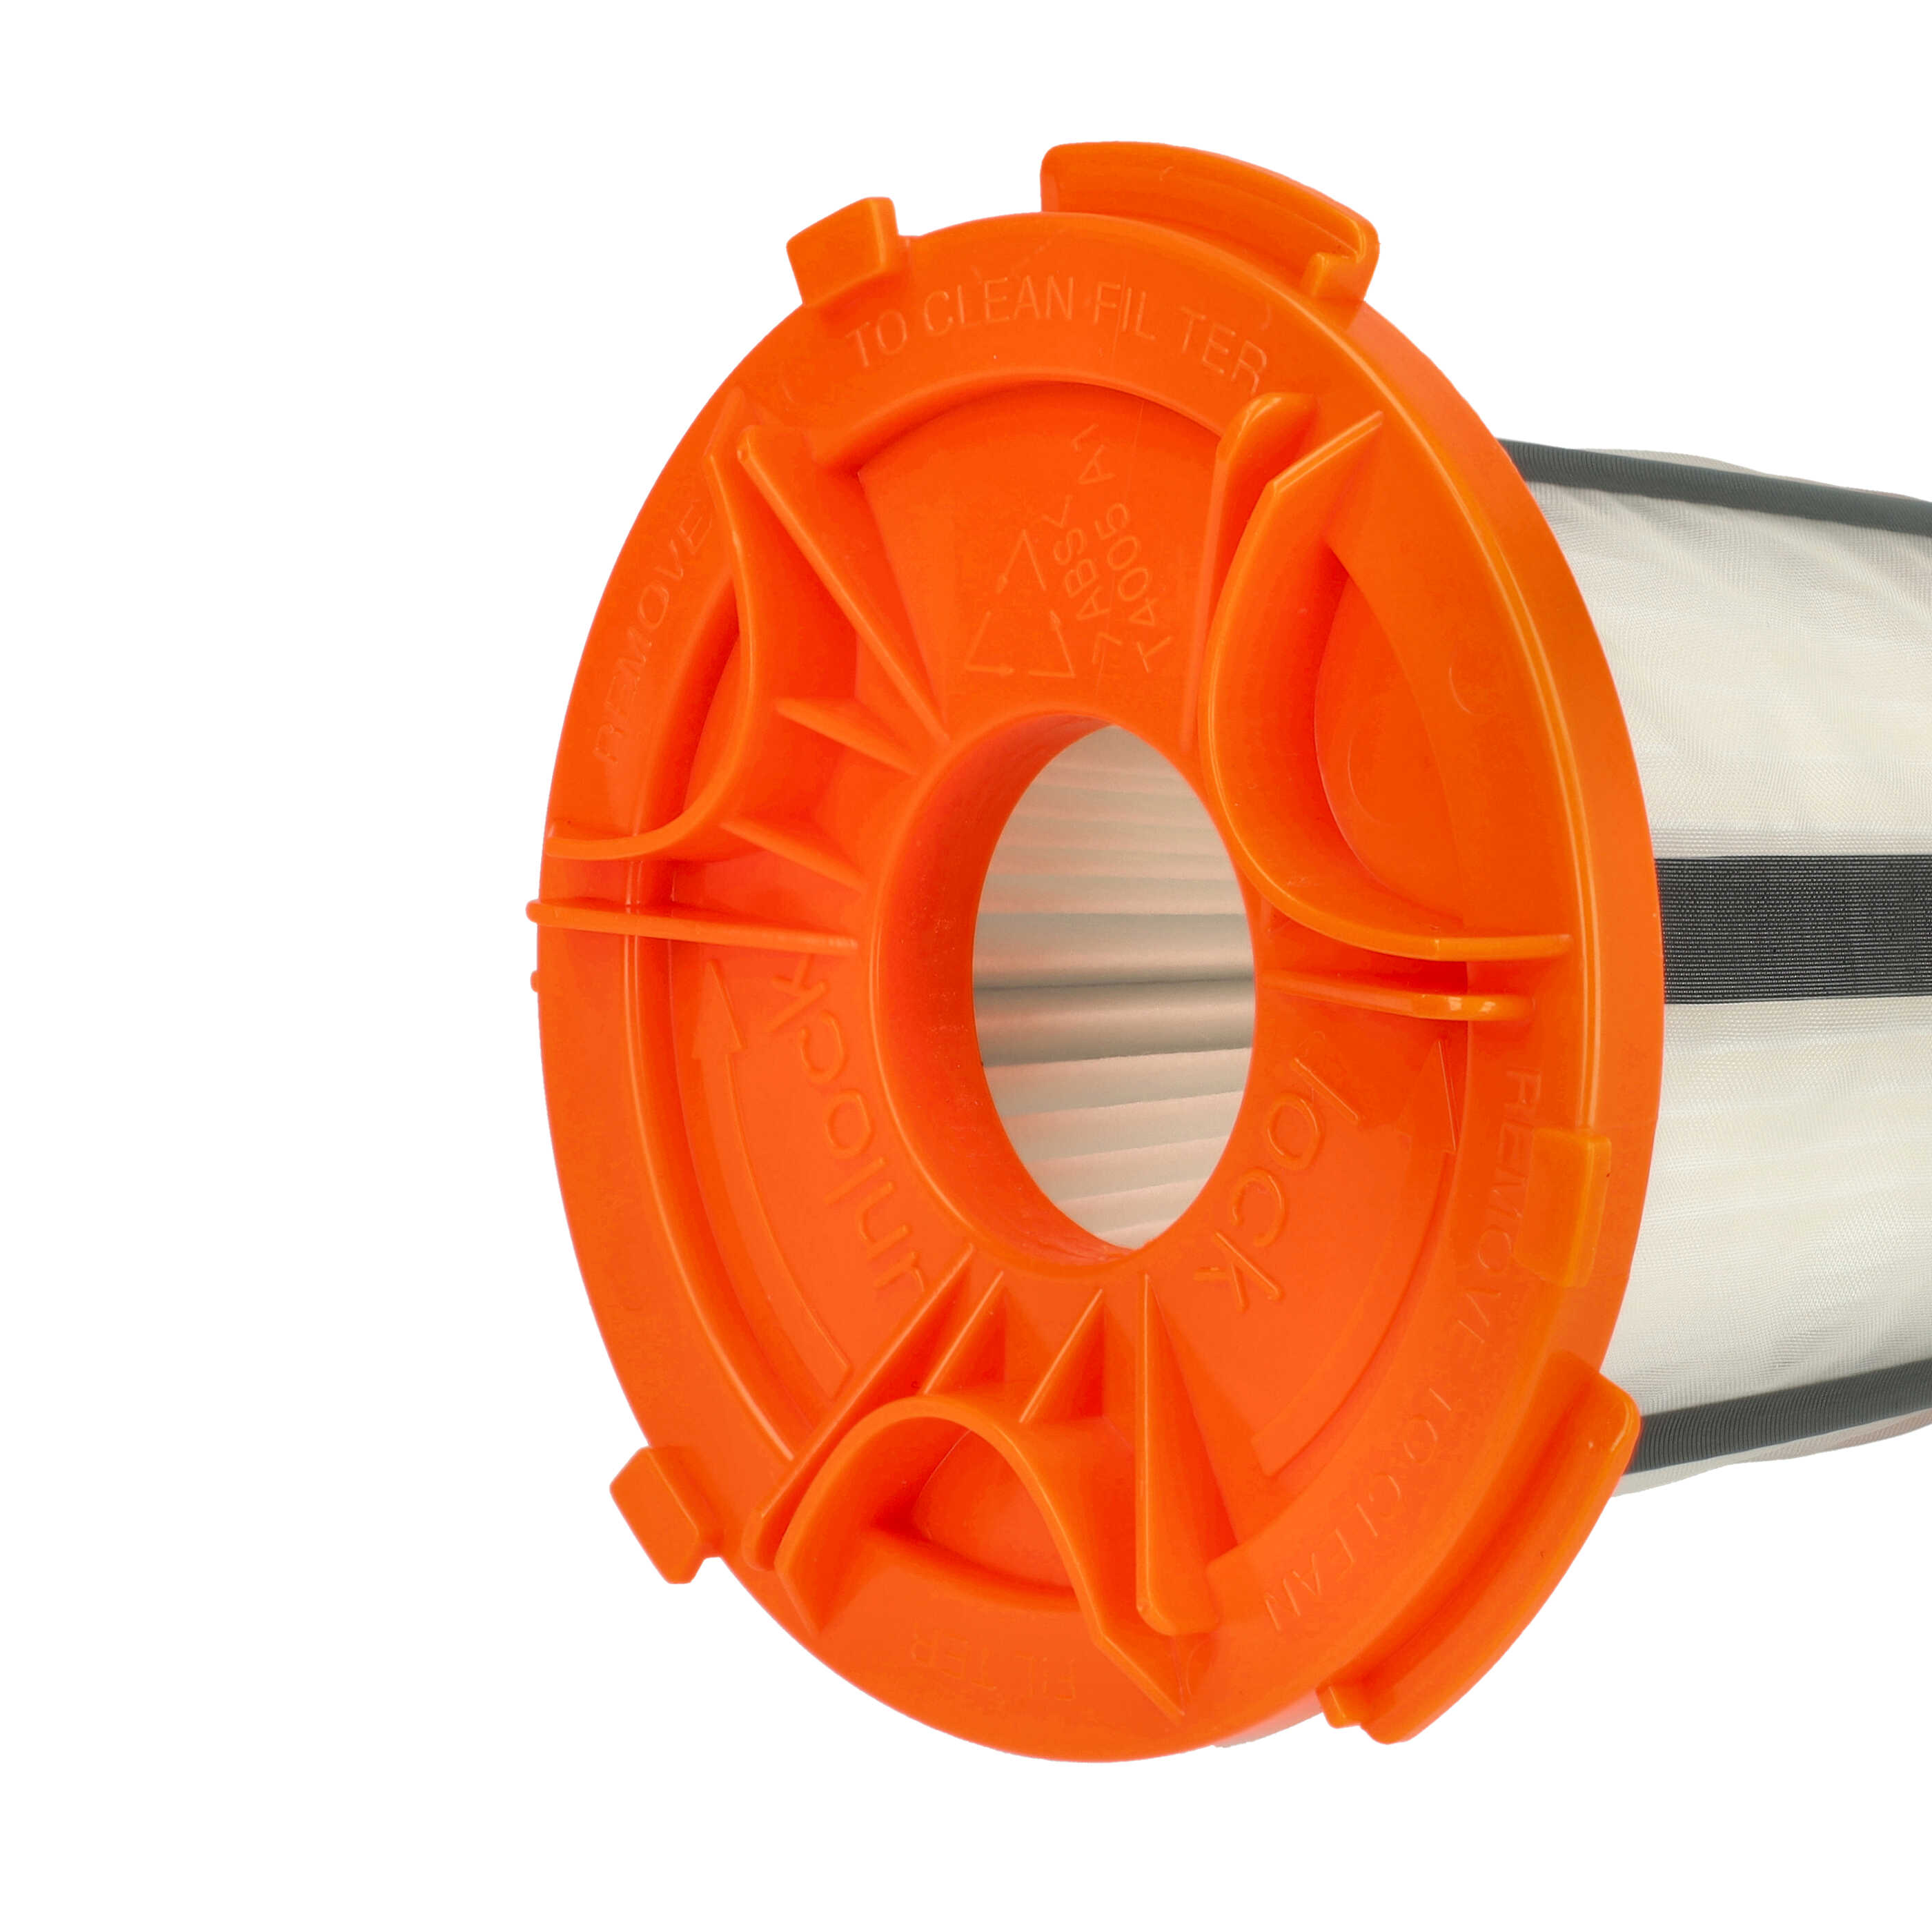 Filtro sostituisce AEG/Electrolux 4071387353 per aspirapolvere - filtro HEPA, nero / arancione / bianco